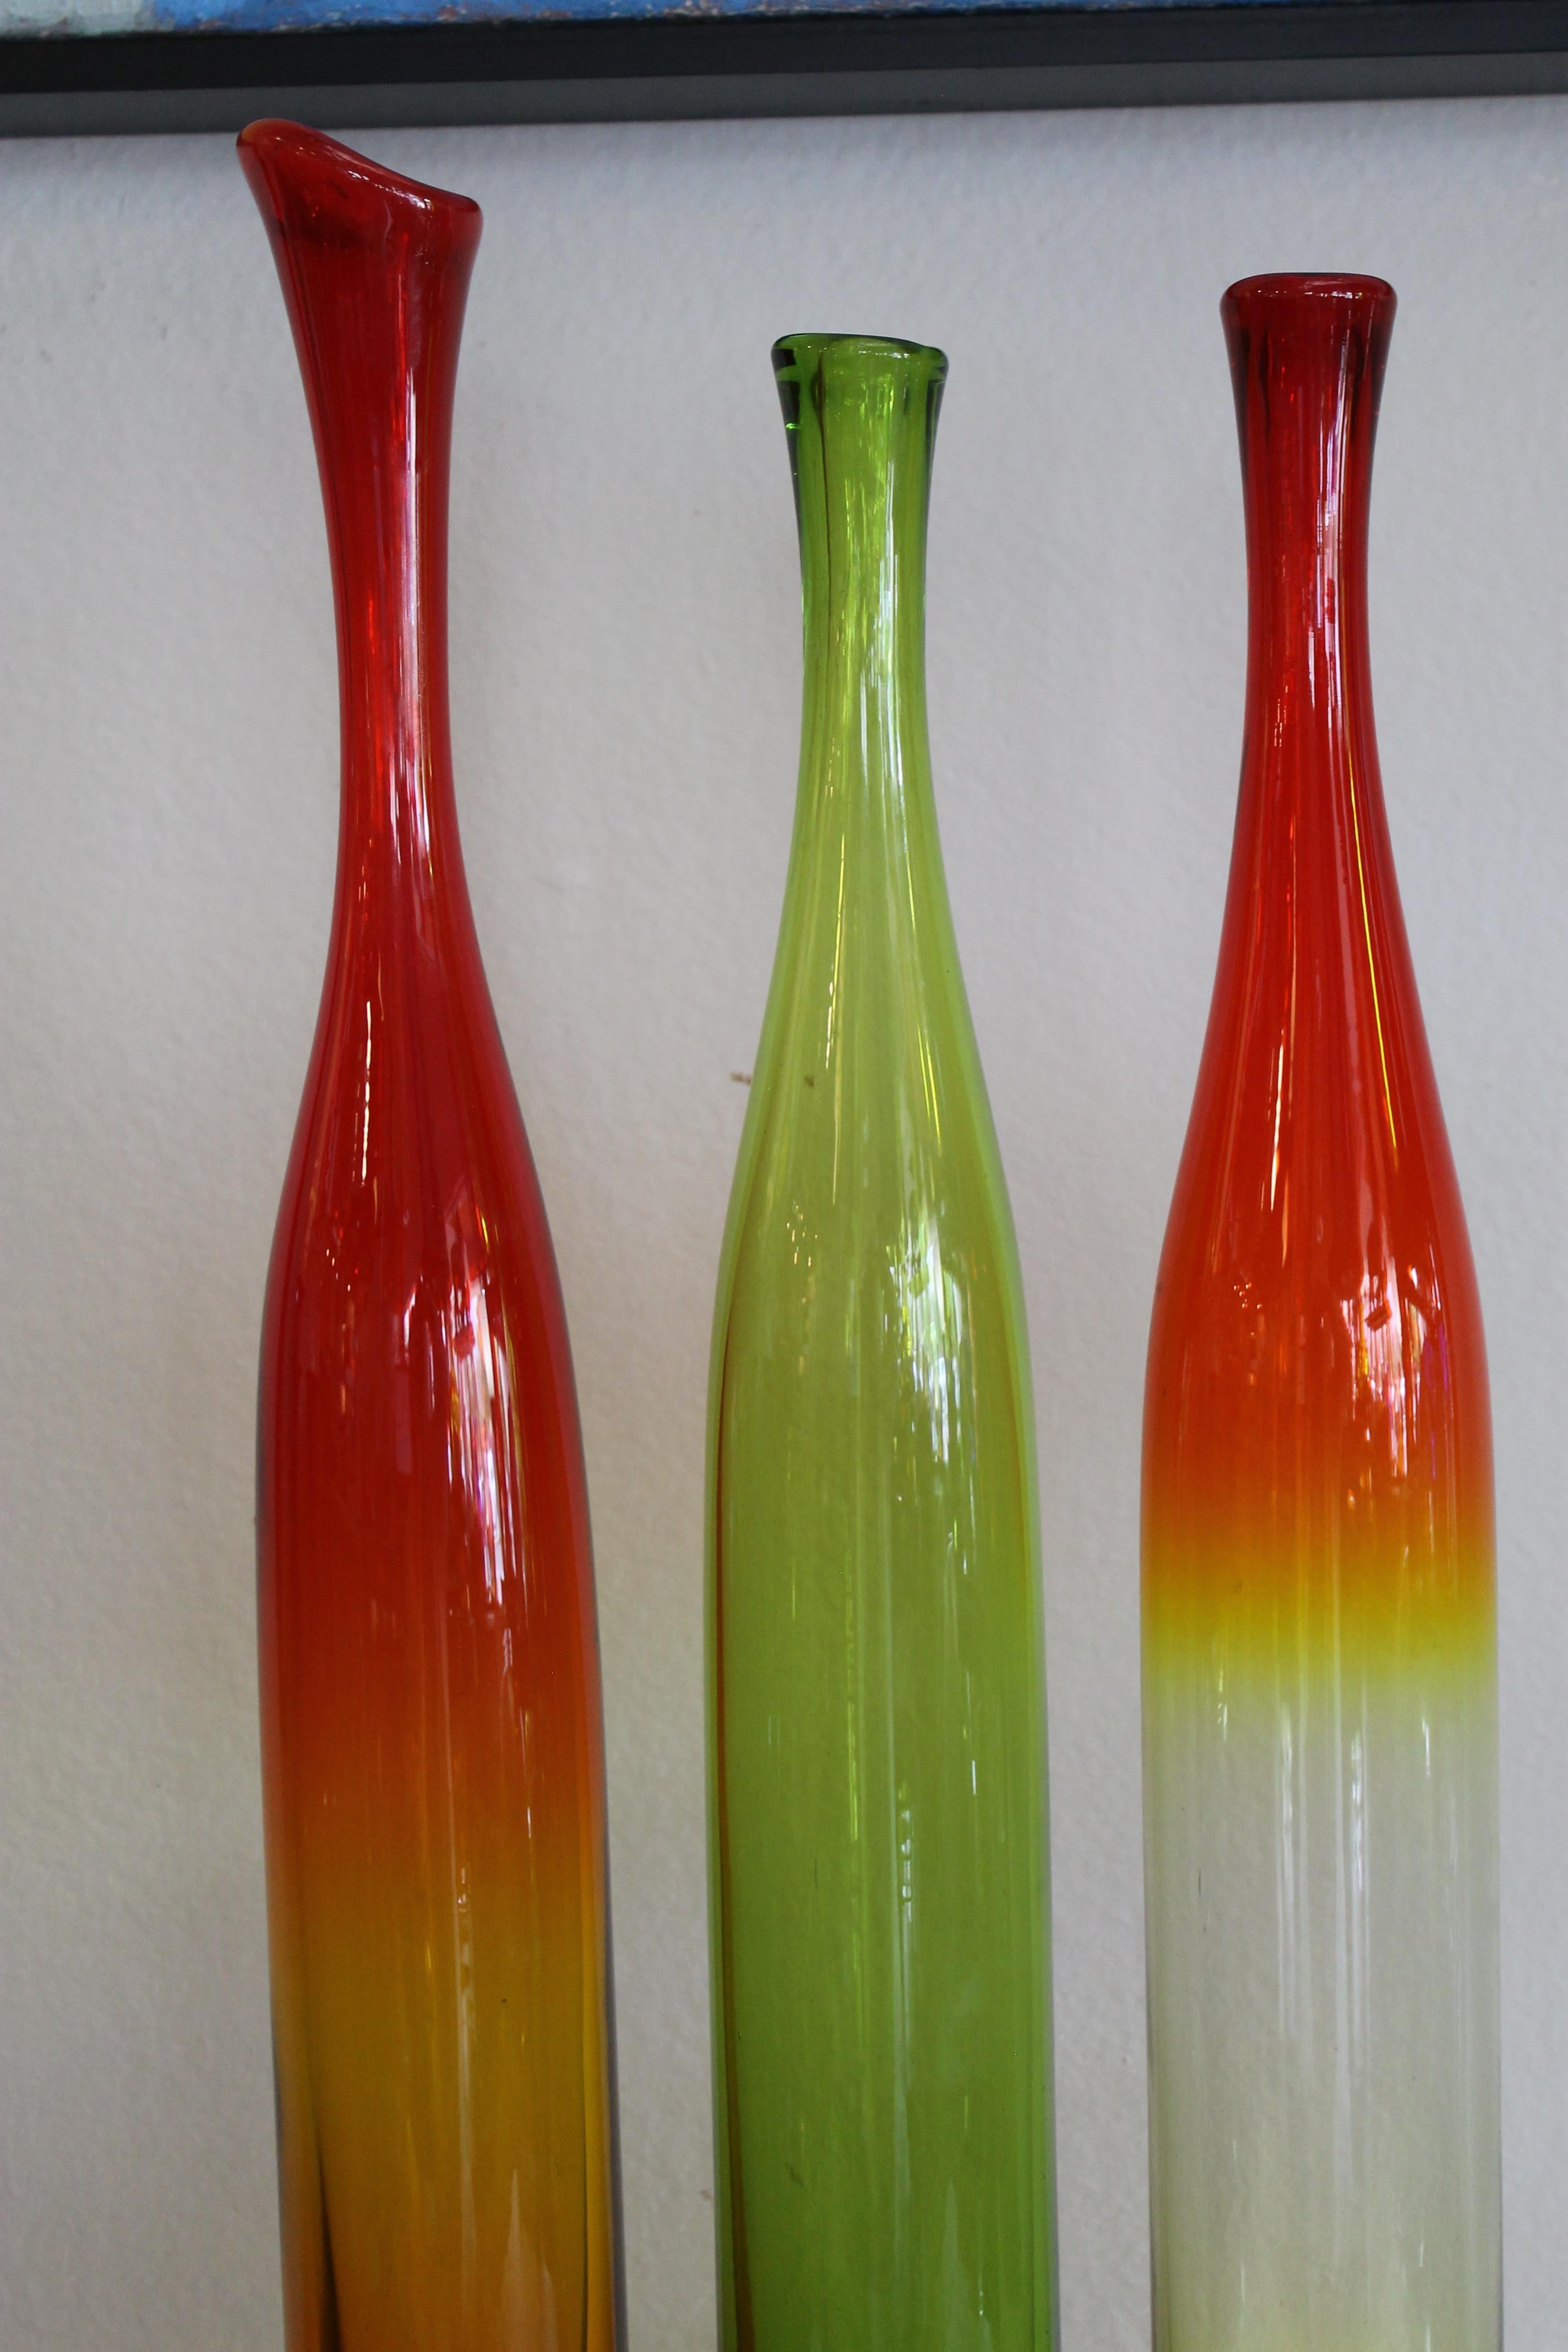 Drei Vasen aus farbigem Glas von Joel Myers, Modell Nr. 6427, 1960s. Hergestellt von Blenko. Die größte Vase ist 23,5